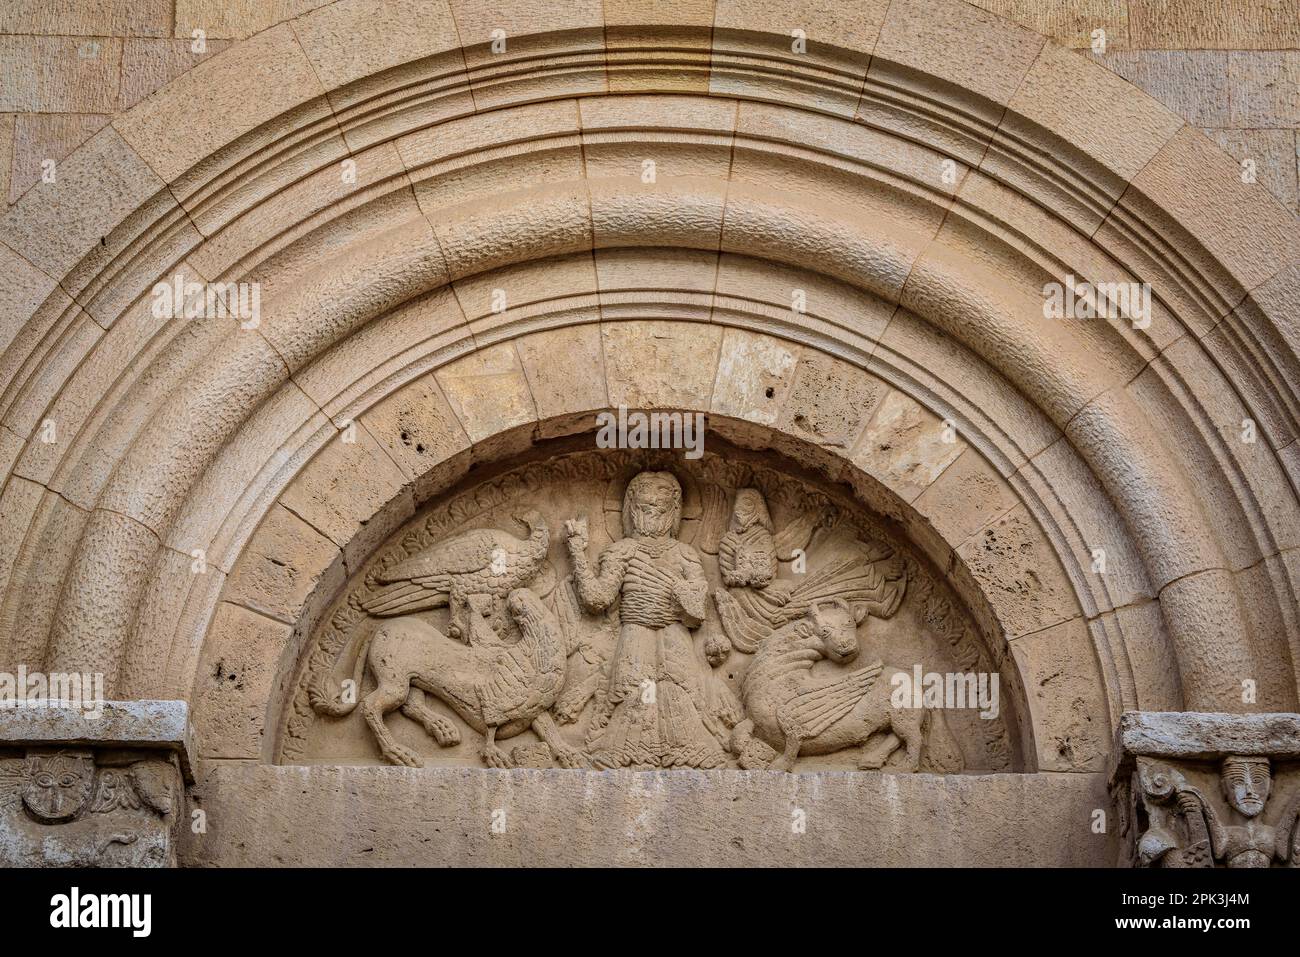 Detalle de la puerta del convento del Monasterio de Pedralbes (Barcelona, Cataluña, España) Esp: Detalle de la puerta del convento Foto de stock